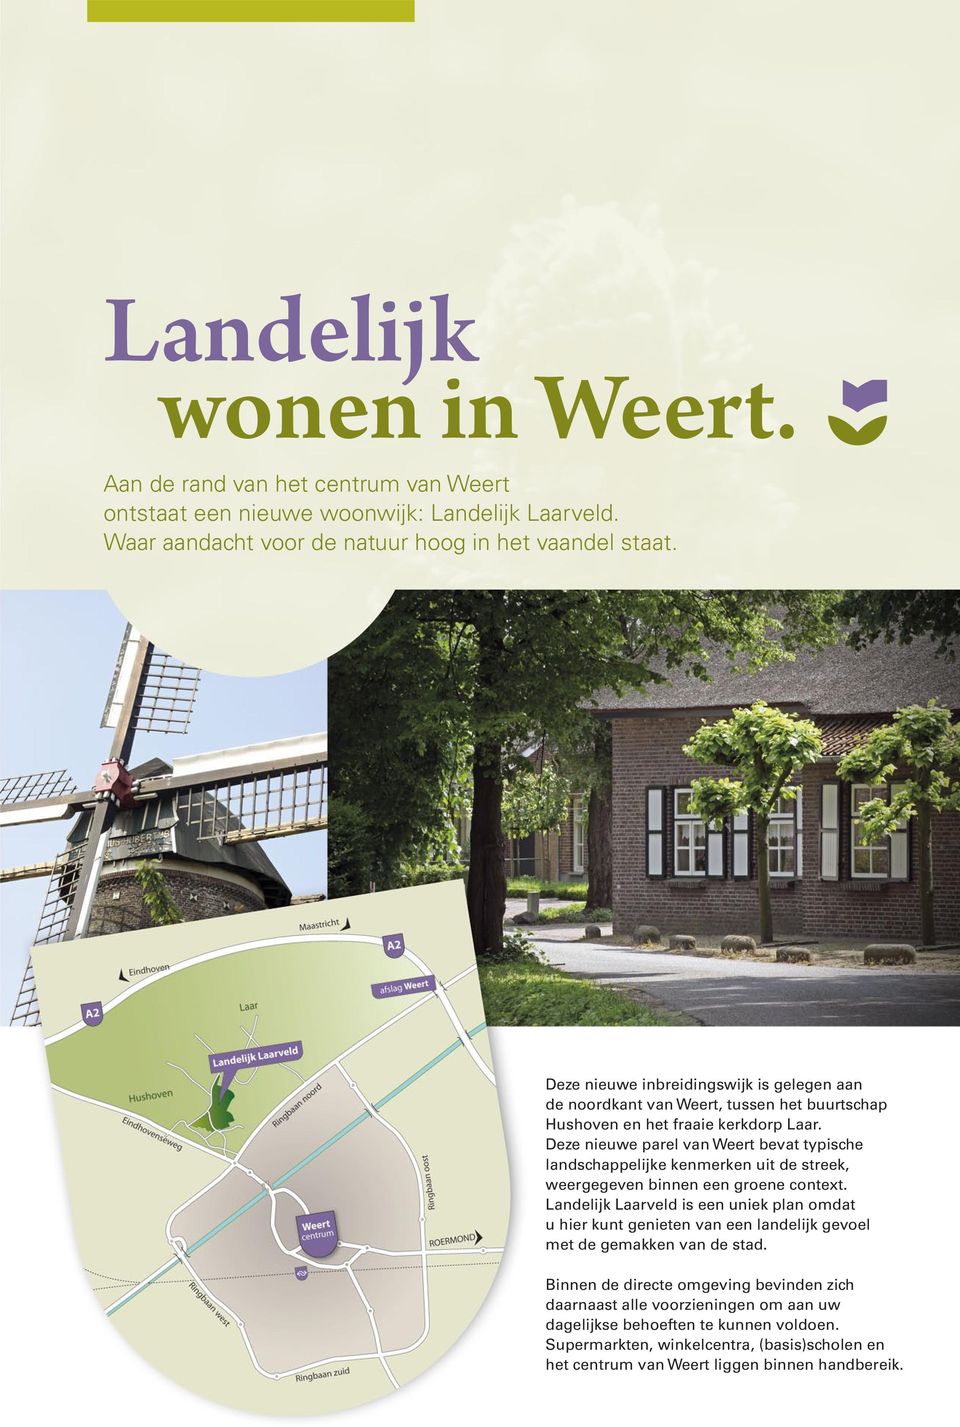 Deze nieuwe parel van Weert bevat typische landschappelijke kenmerken uit de streek, weergegeven binnen een groene context.